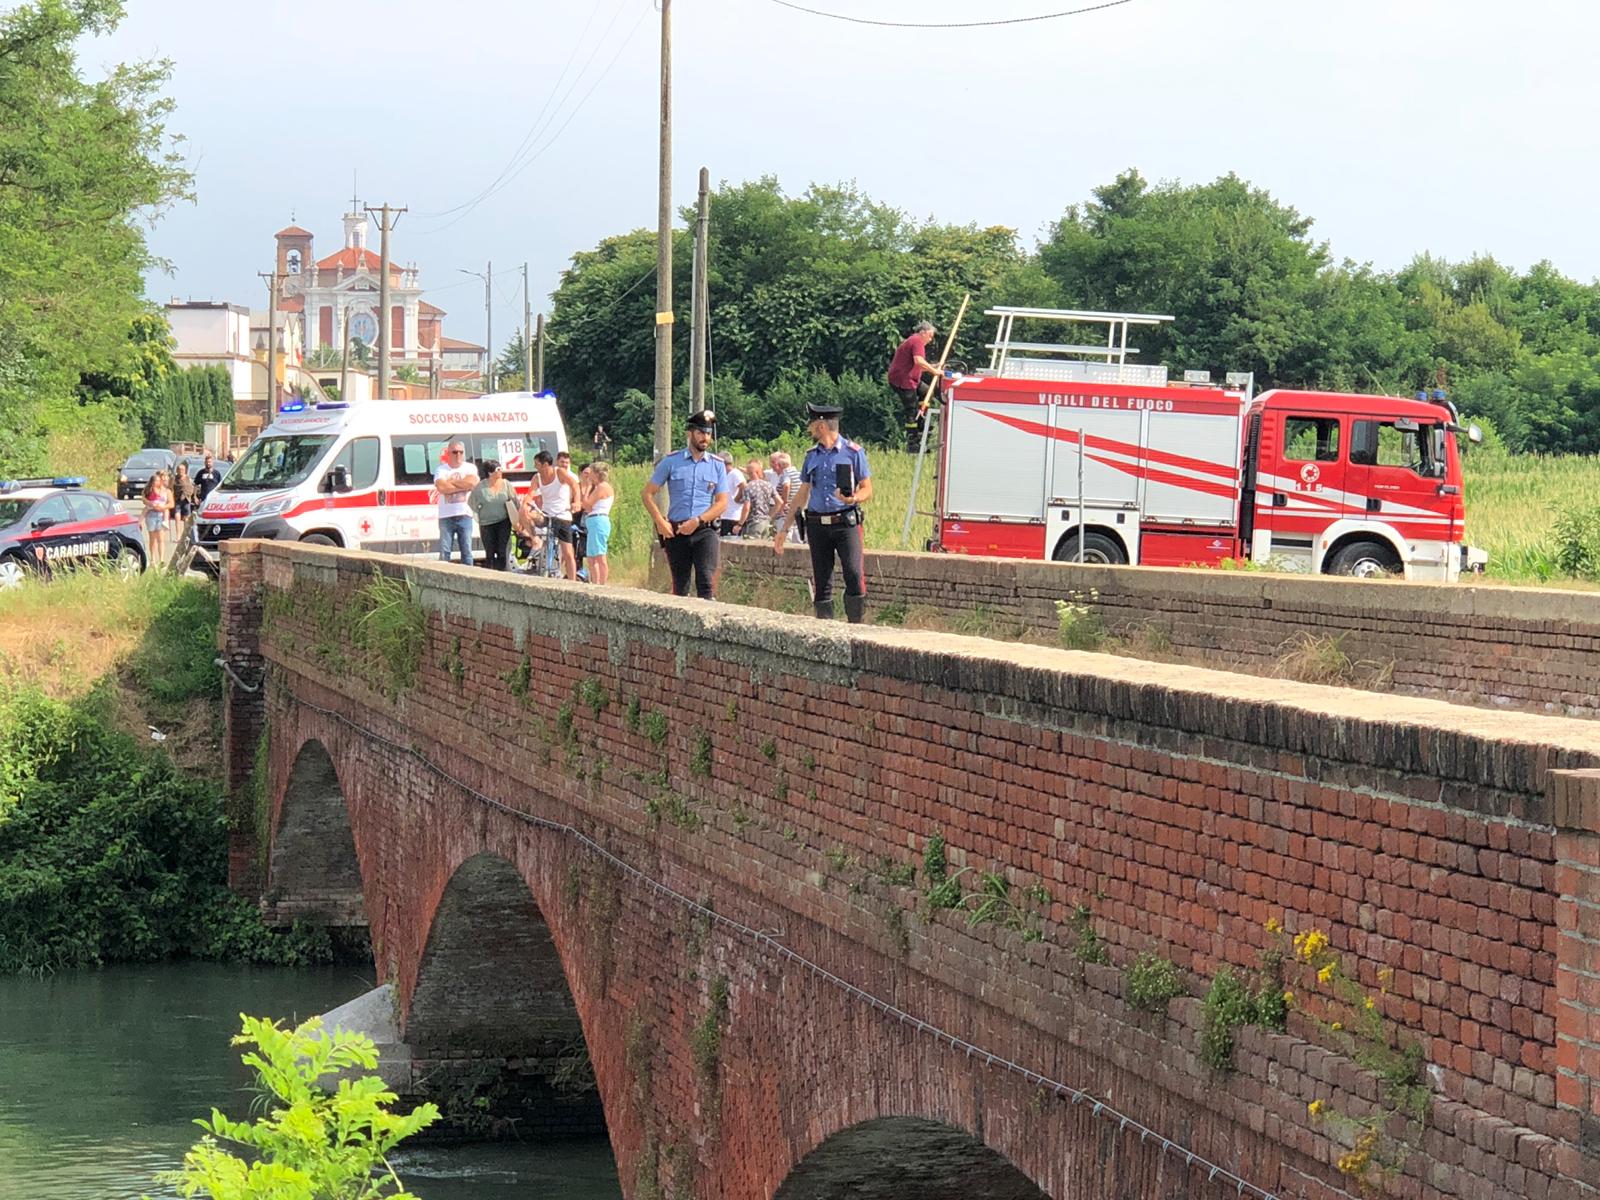 Uomo si butta nel canale a Chivasso e muore. Il cadavere è stato recuperato all'altezza di Castelrosso dai soccorritori avvisati da una persona che ha visto la scena. 